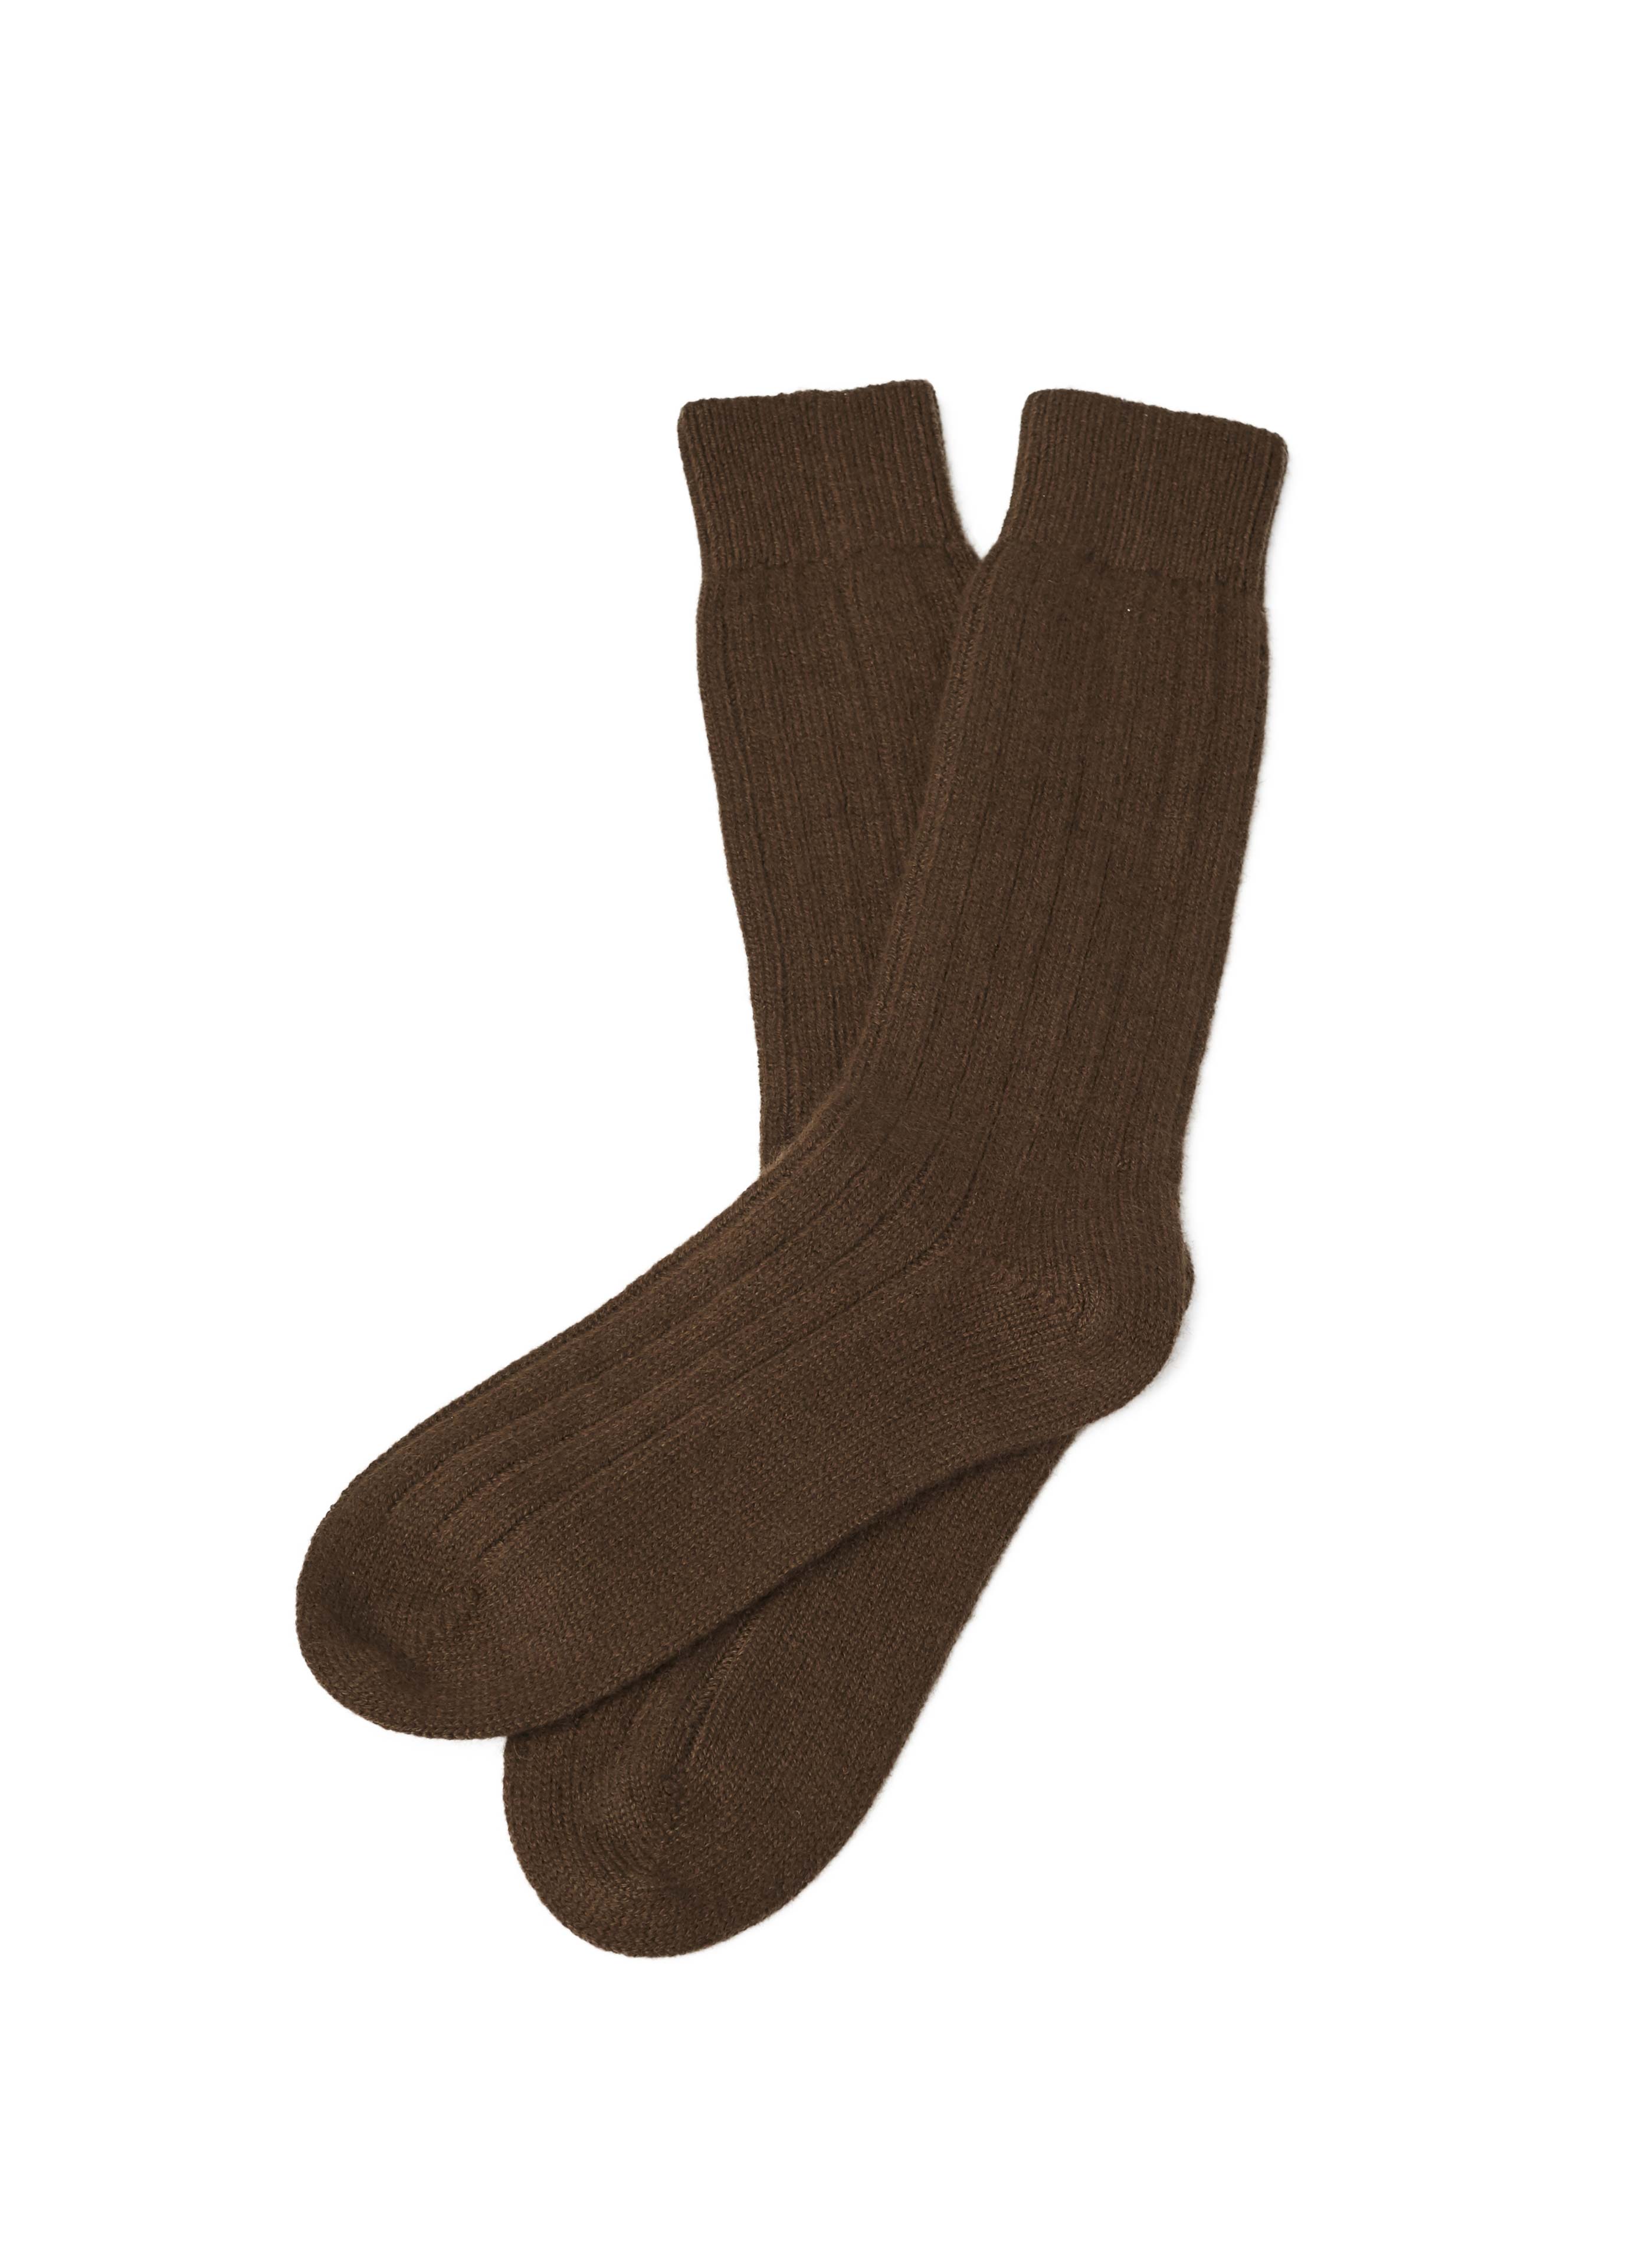 Pure Cashmere Socks (Espresso, Small/Medium)